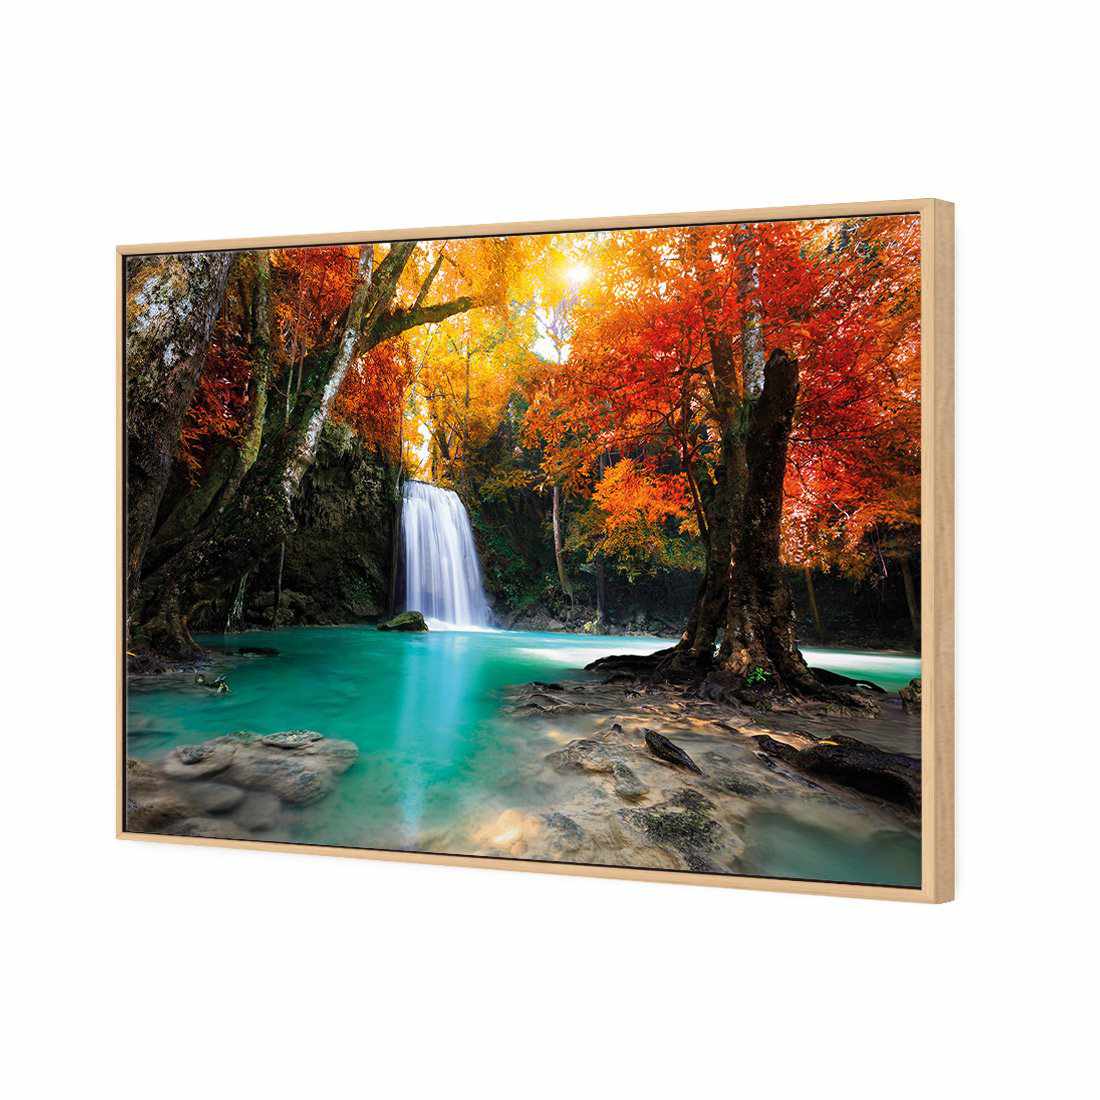 Autumn Waterfall Magic Canvas Art-Canvas-Wall Art Designs-45x30cm-Canvas - Oak Frame-Wall Art Designs